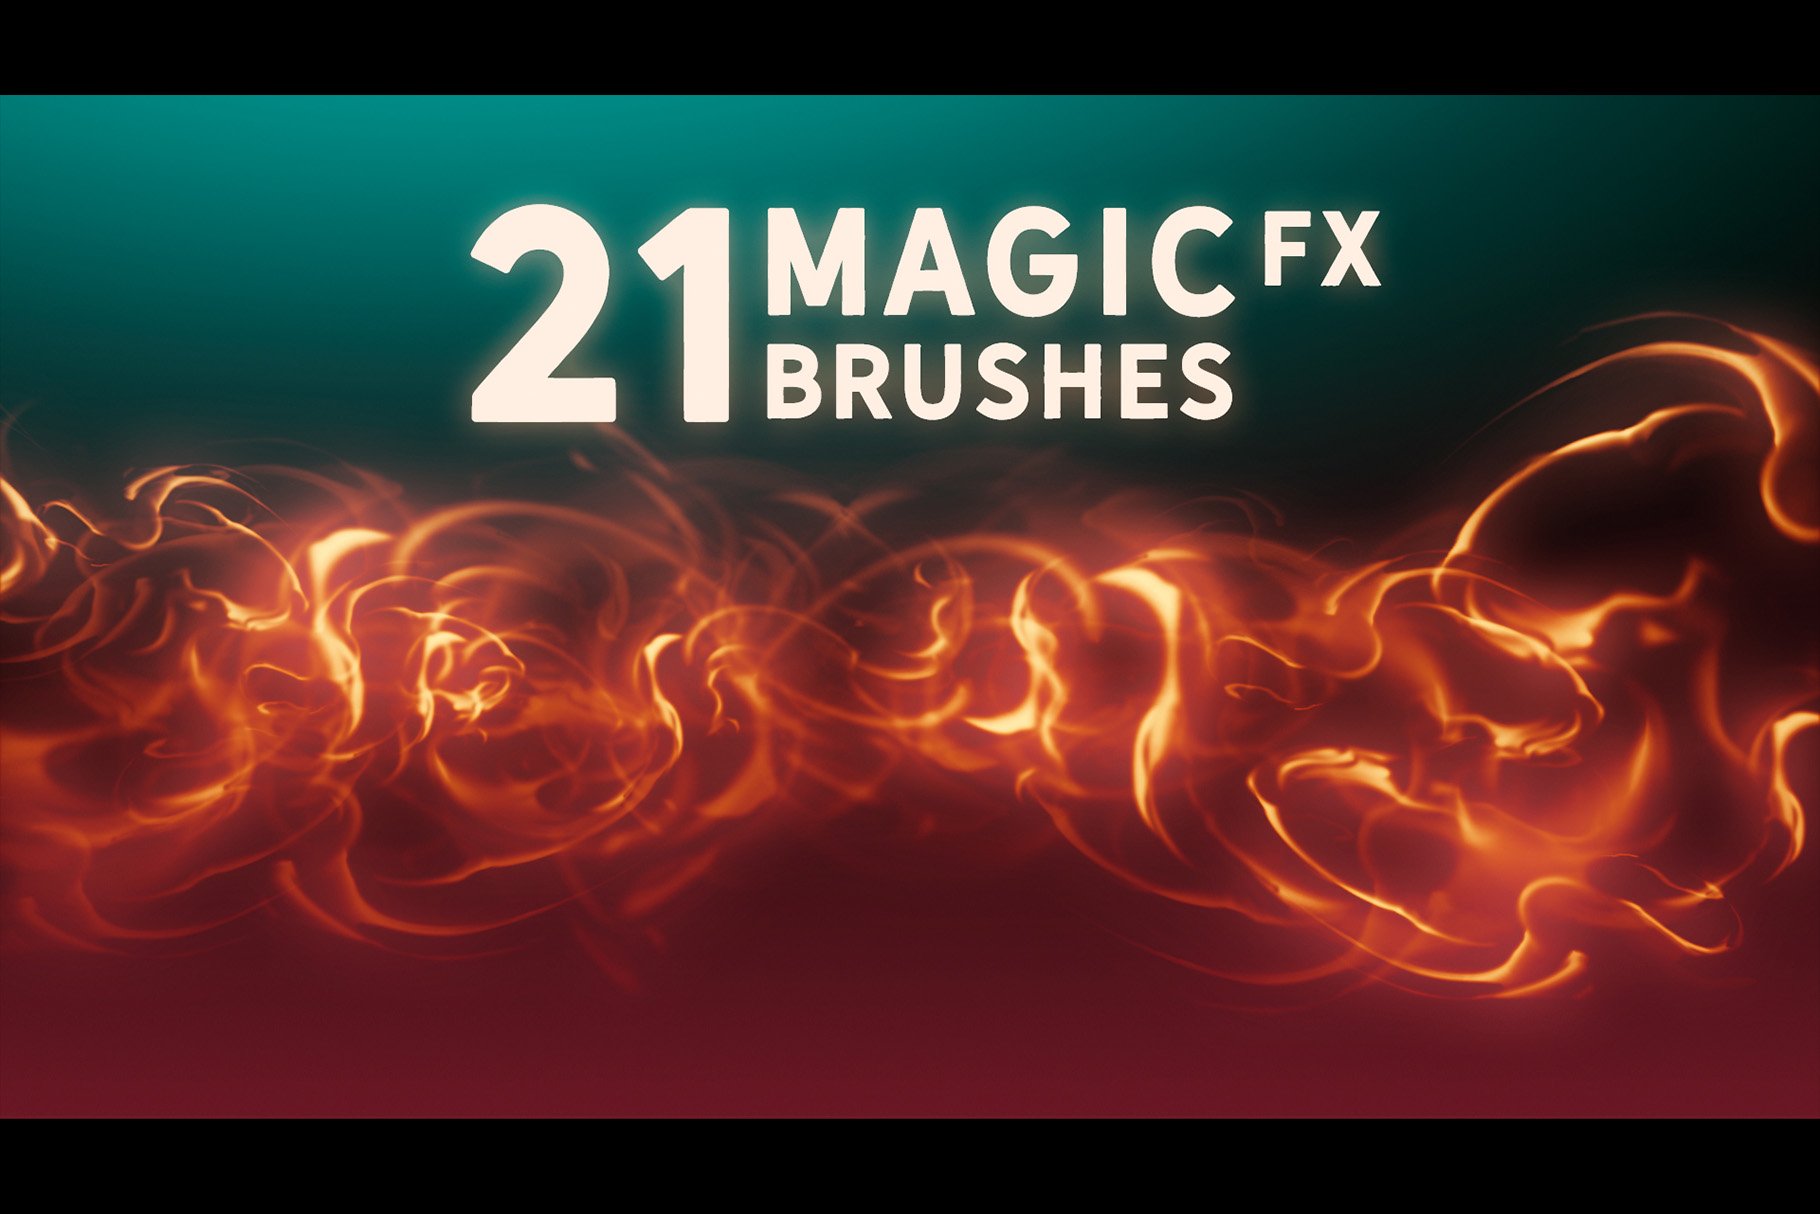 Magic FX Brushes Vol. 1cover image.